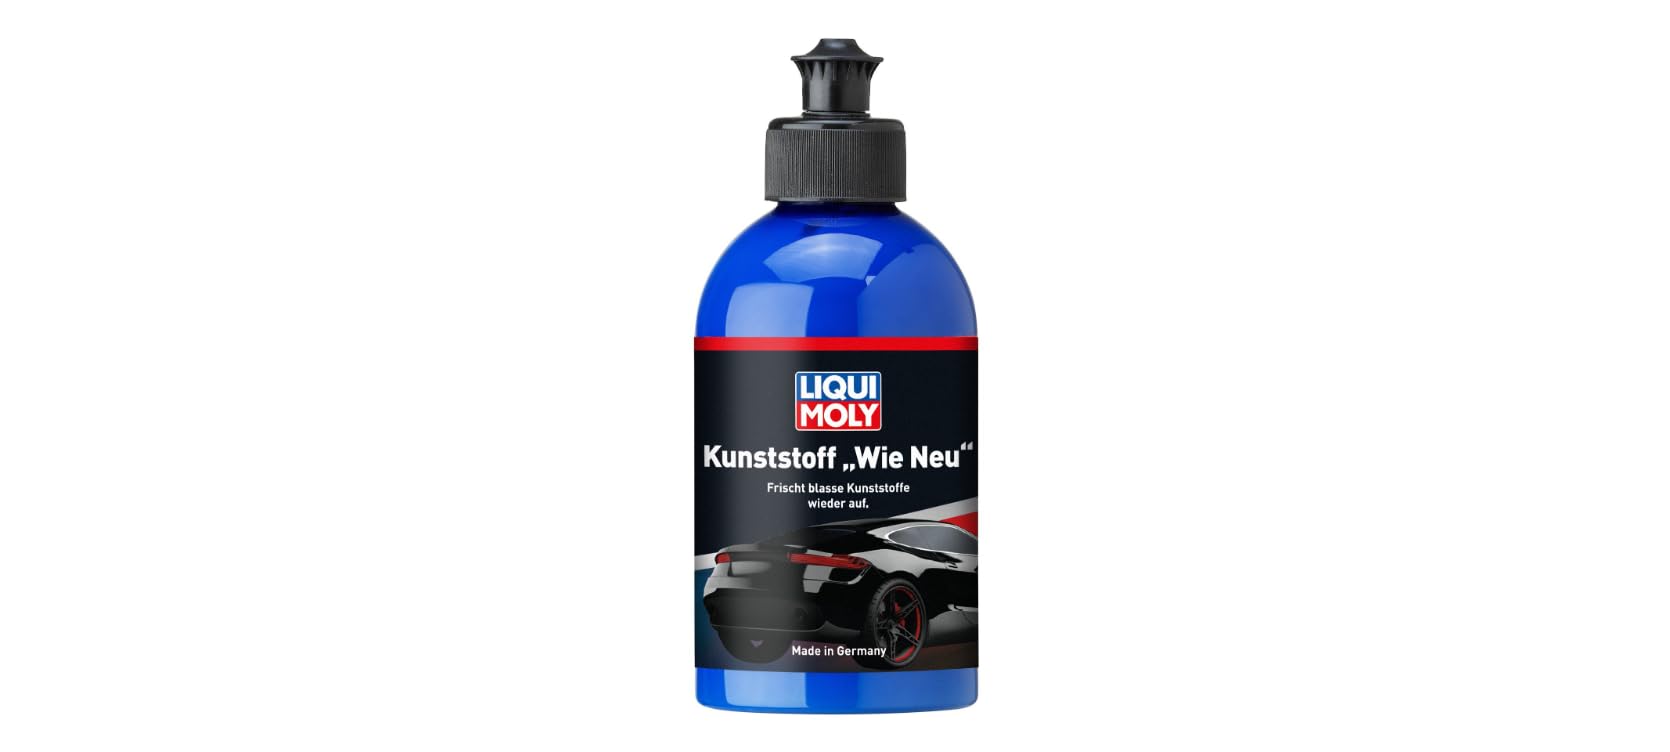 LIQUI MOLY Kunststoff »Wie Neu« | 250 ml | Autopflege | Art.-Nr.: 1552 von Liqui Moly